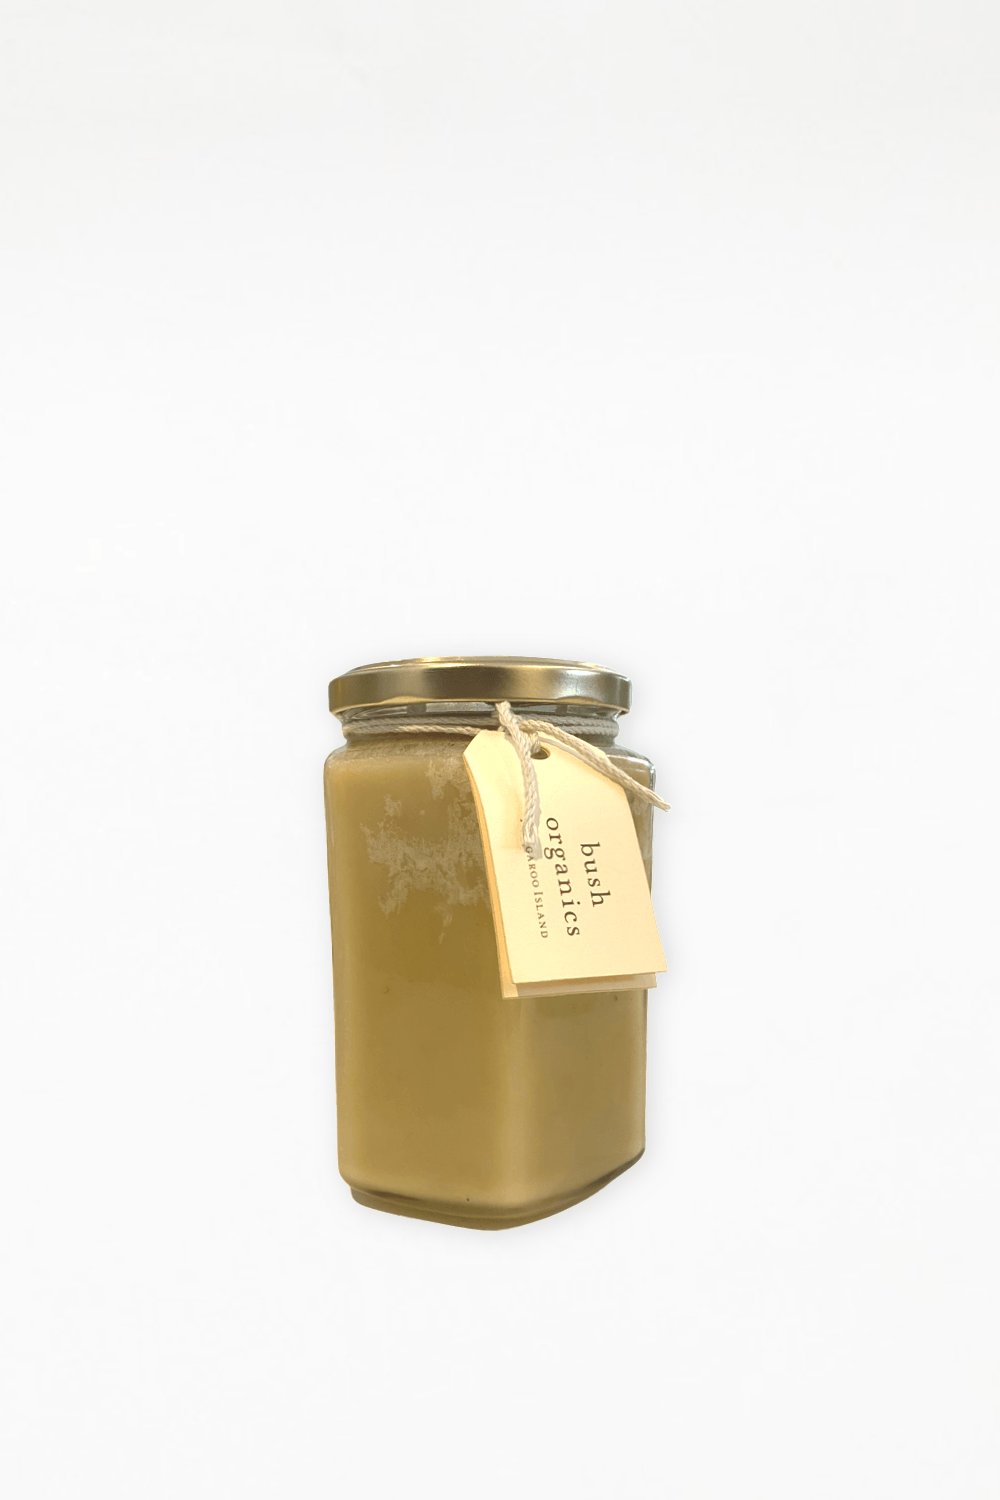 Bush Organics - Raw Organic Honey 400g - Ensemble Studios